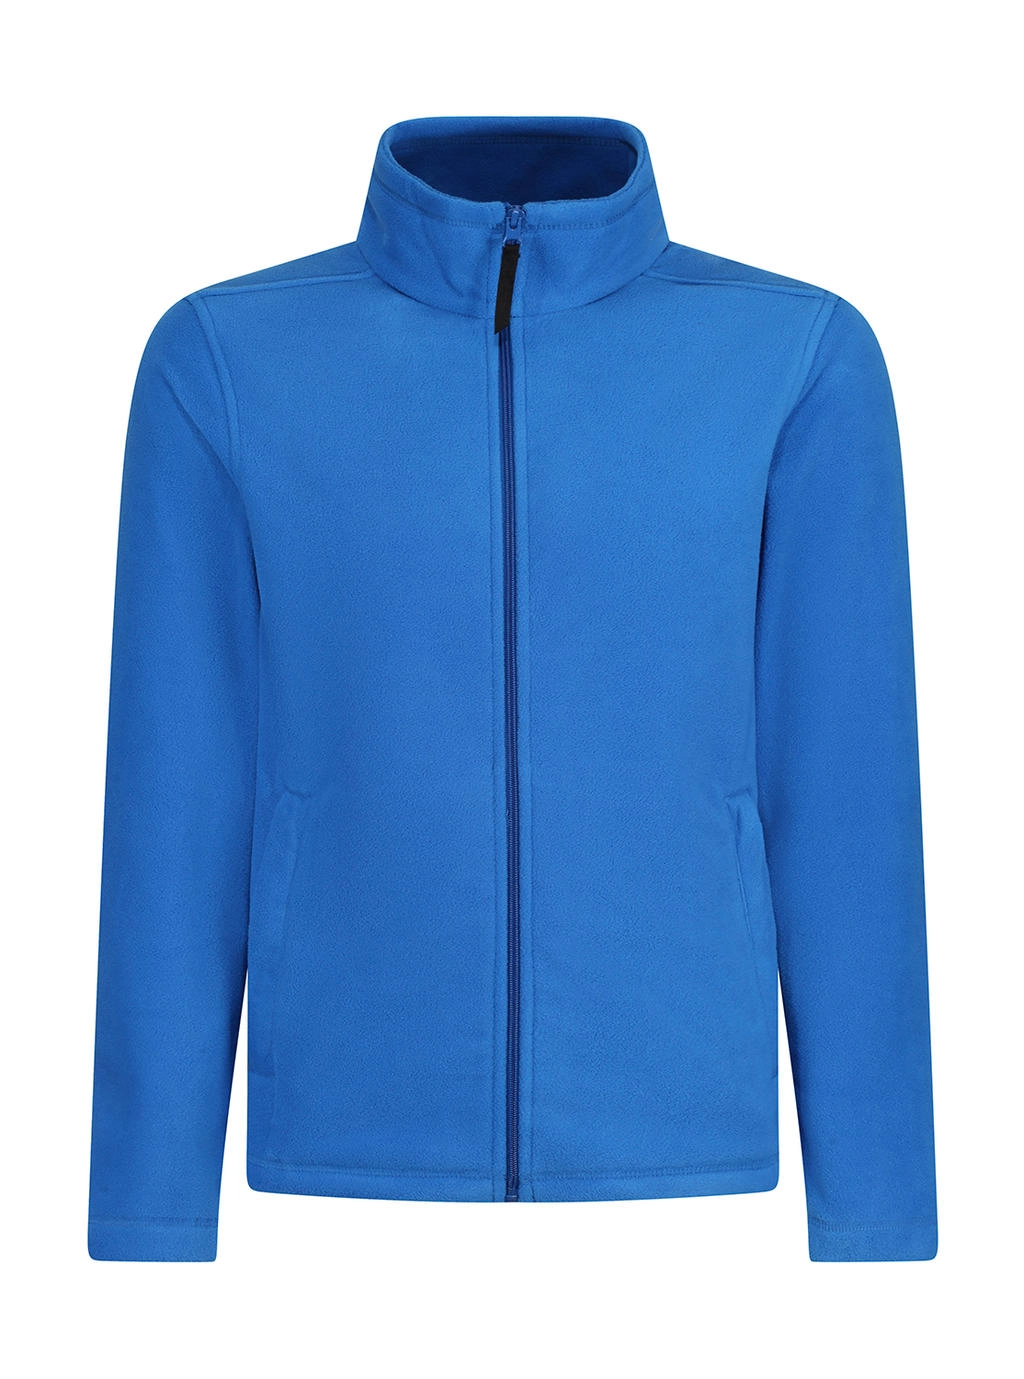 Micro Full Zip Fleece zum Besticken und Bedrucken in der Farbe Oxford Blue mit Ihren Logo, Schriftzug oder Motiv.